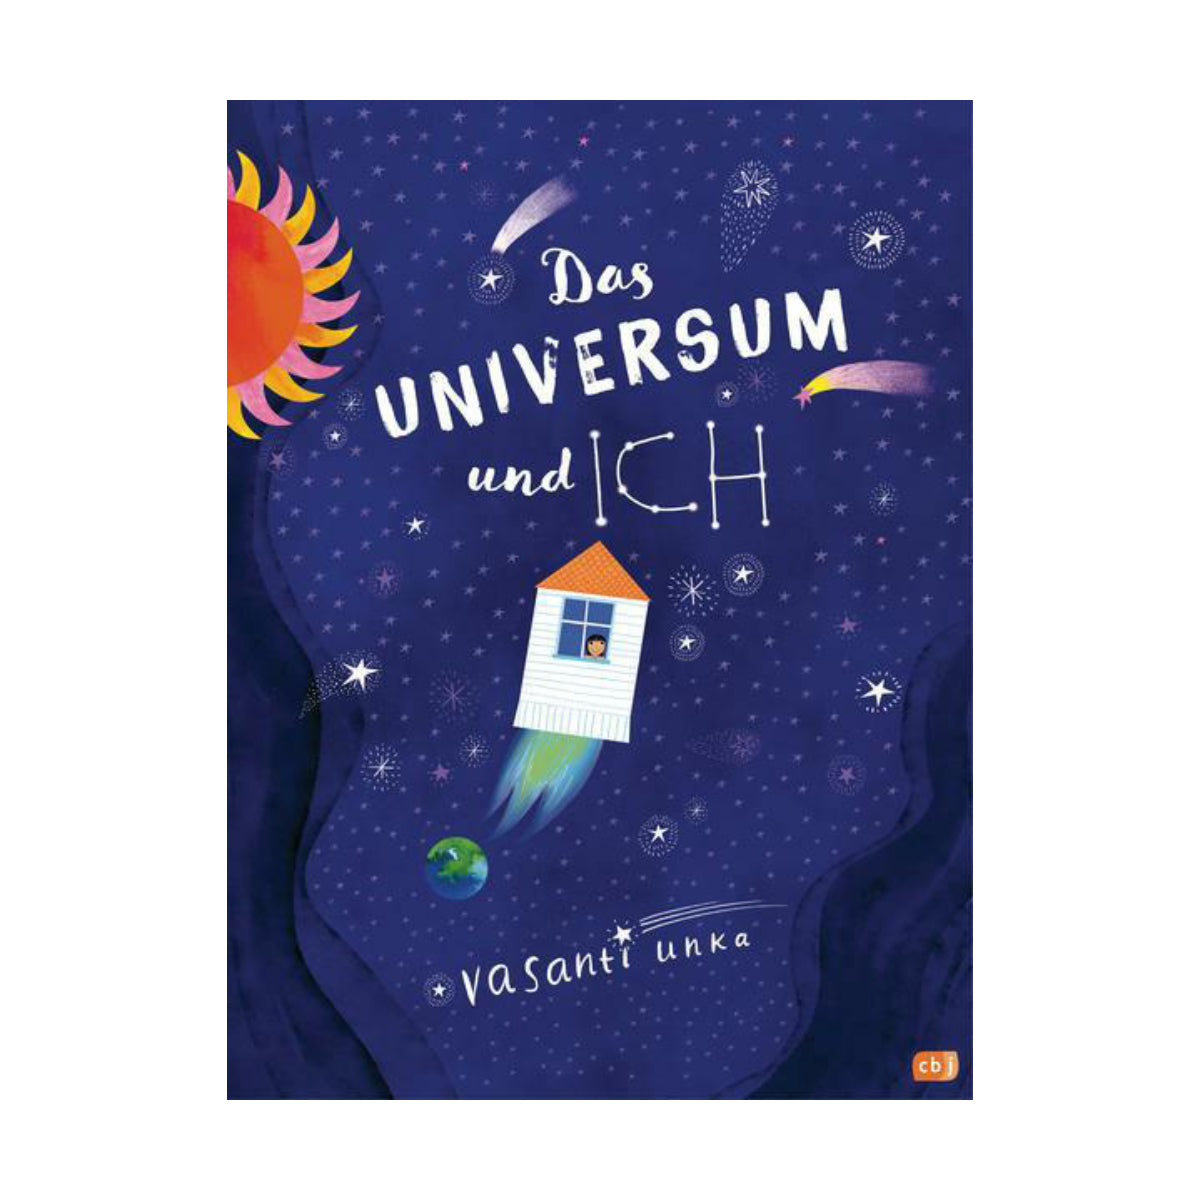 Cbj Verlag – Buch DAS UNIVERSUM UND ICH von Vasanti Unka - WILDHOOD store